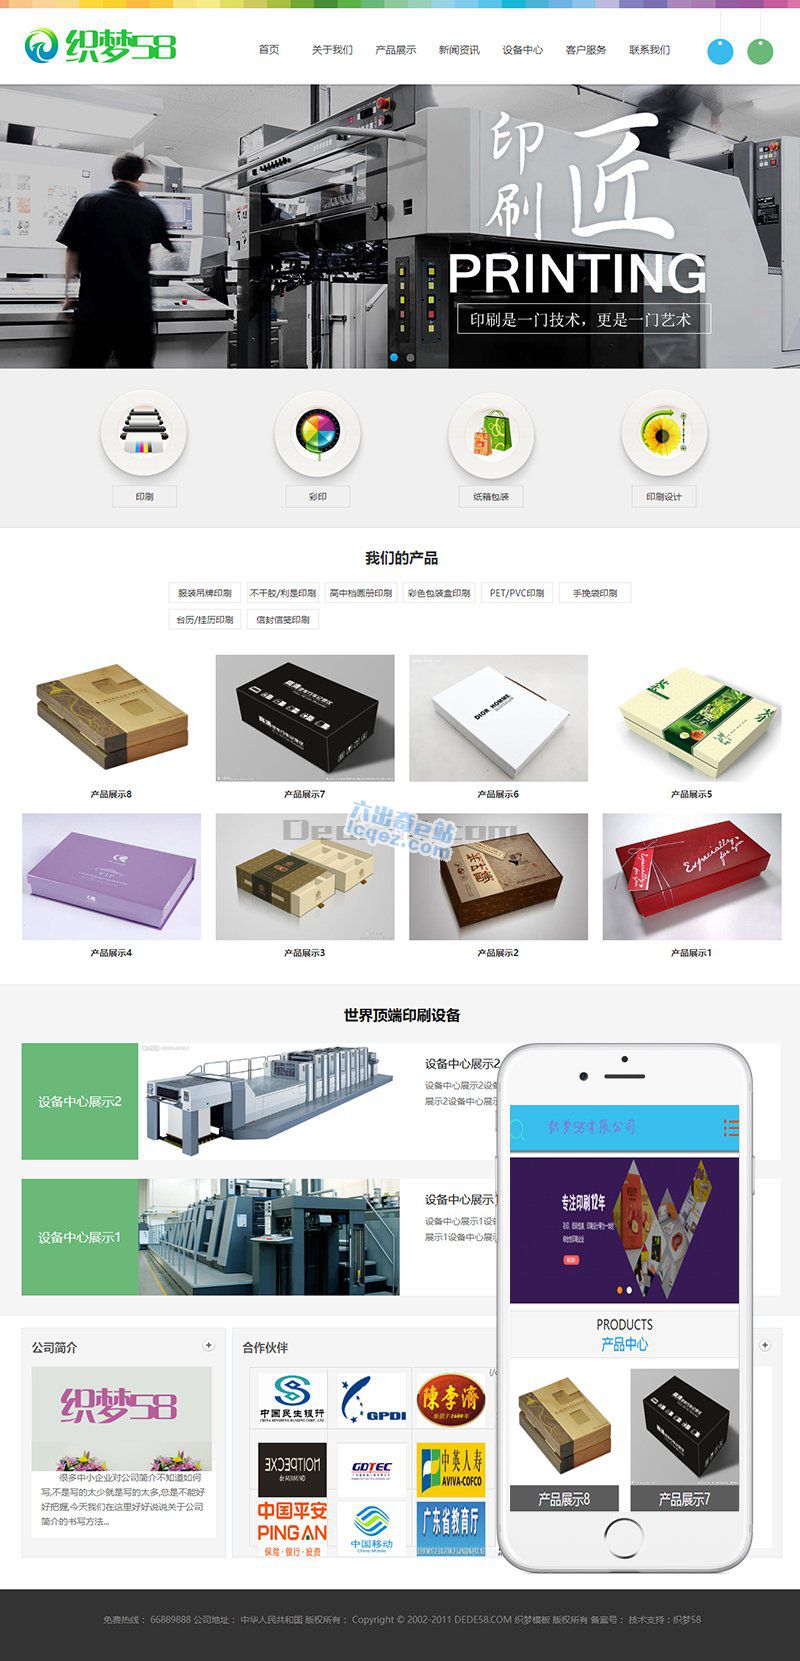     印刷广告设计图文公司企业网站源码 织梦dedecms模板 (带手机端)
